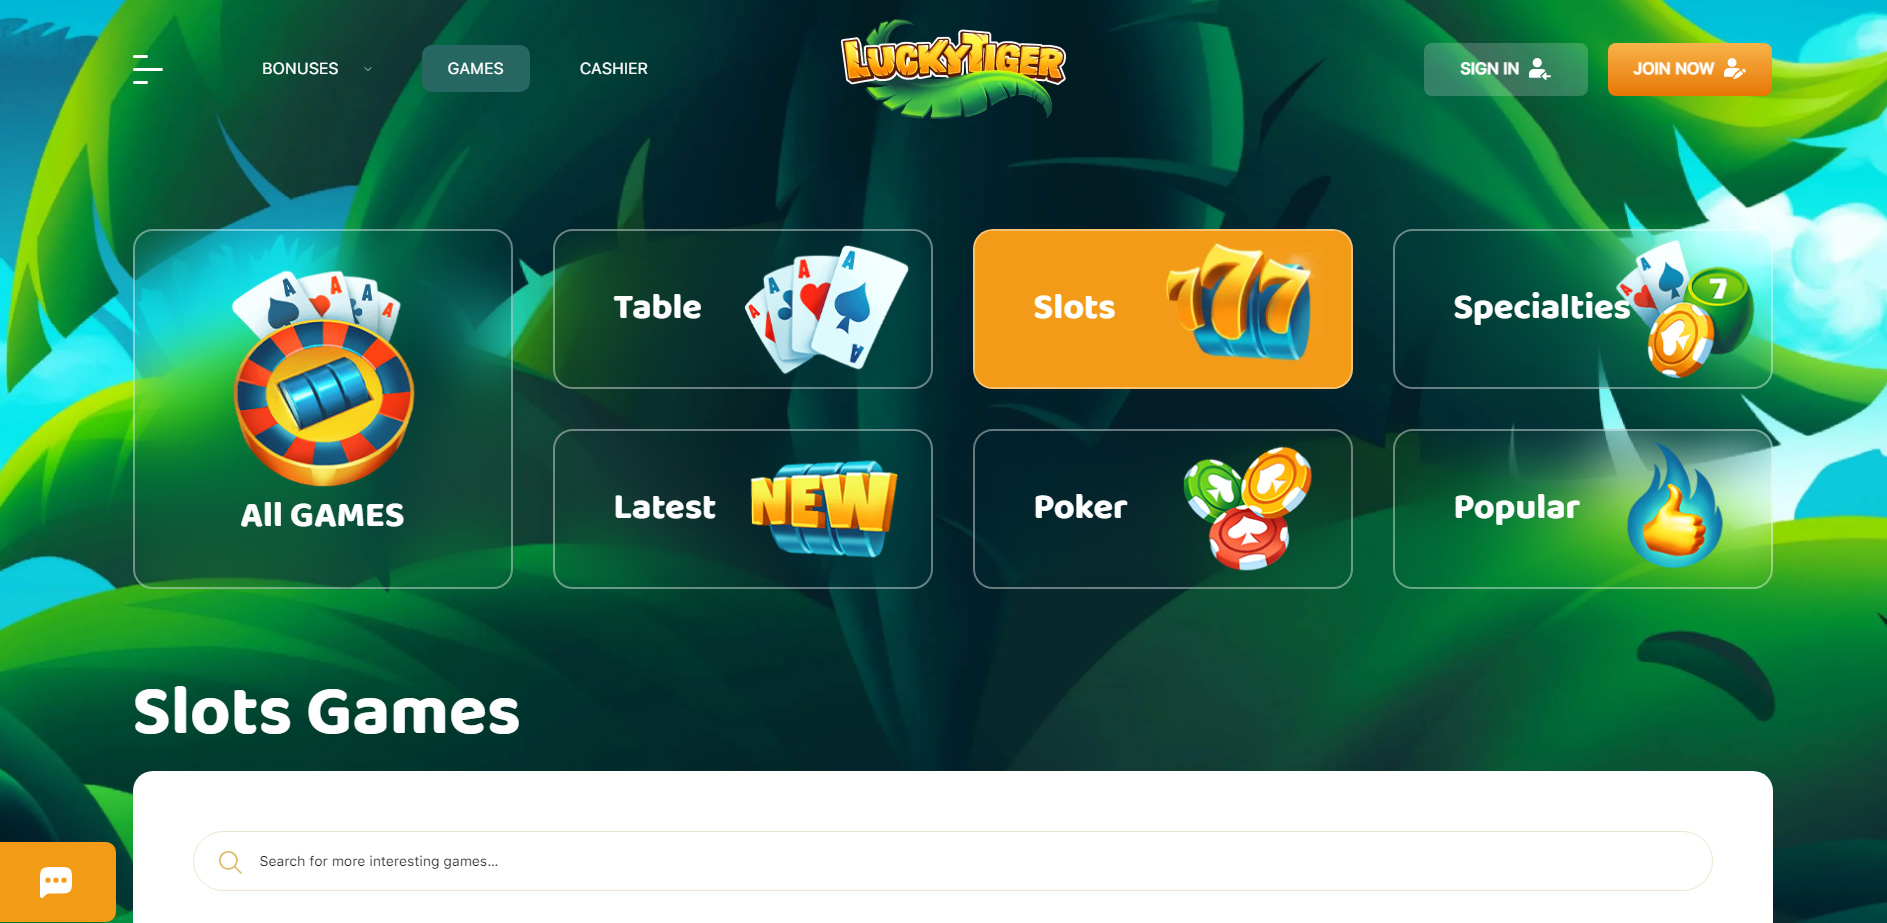 Lucky Tiger Casino Games